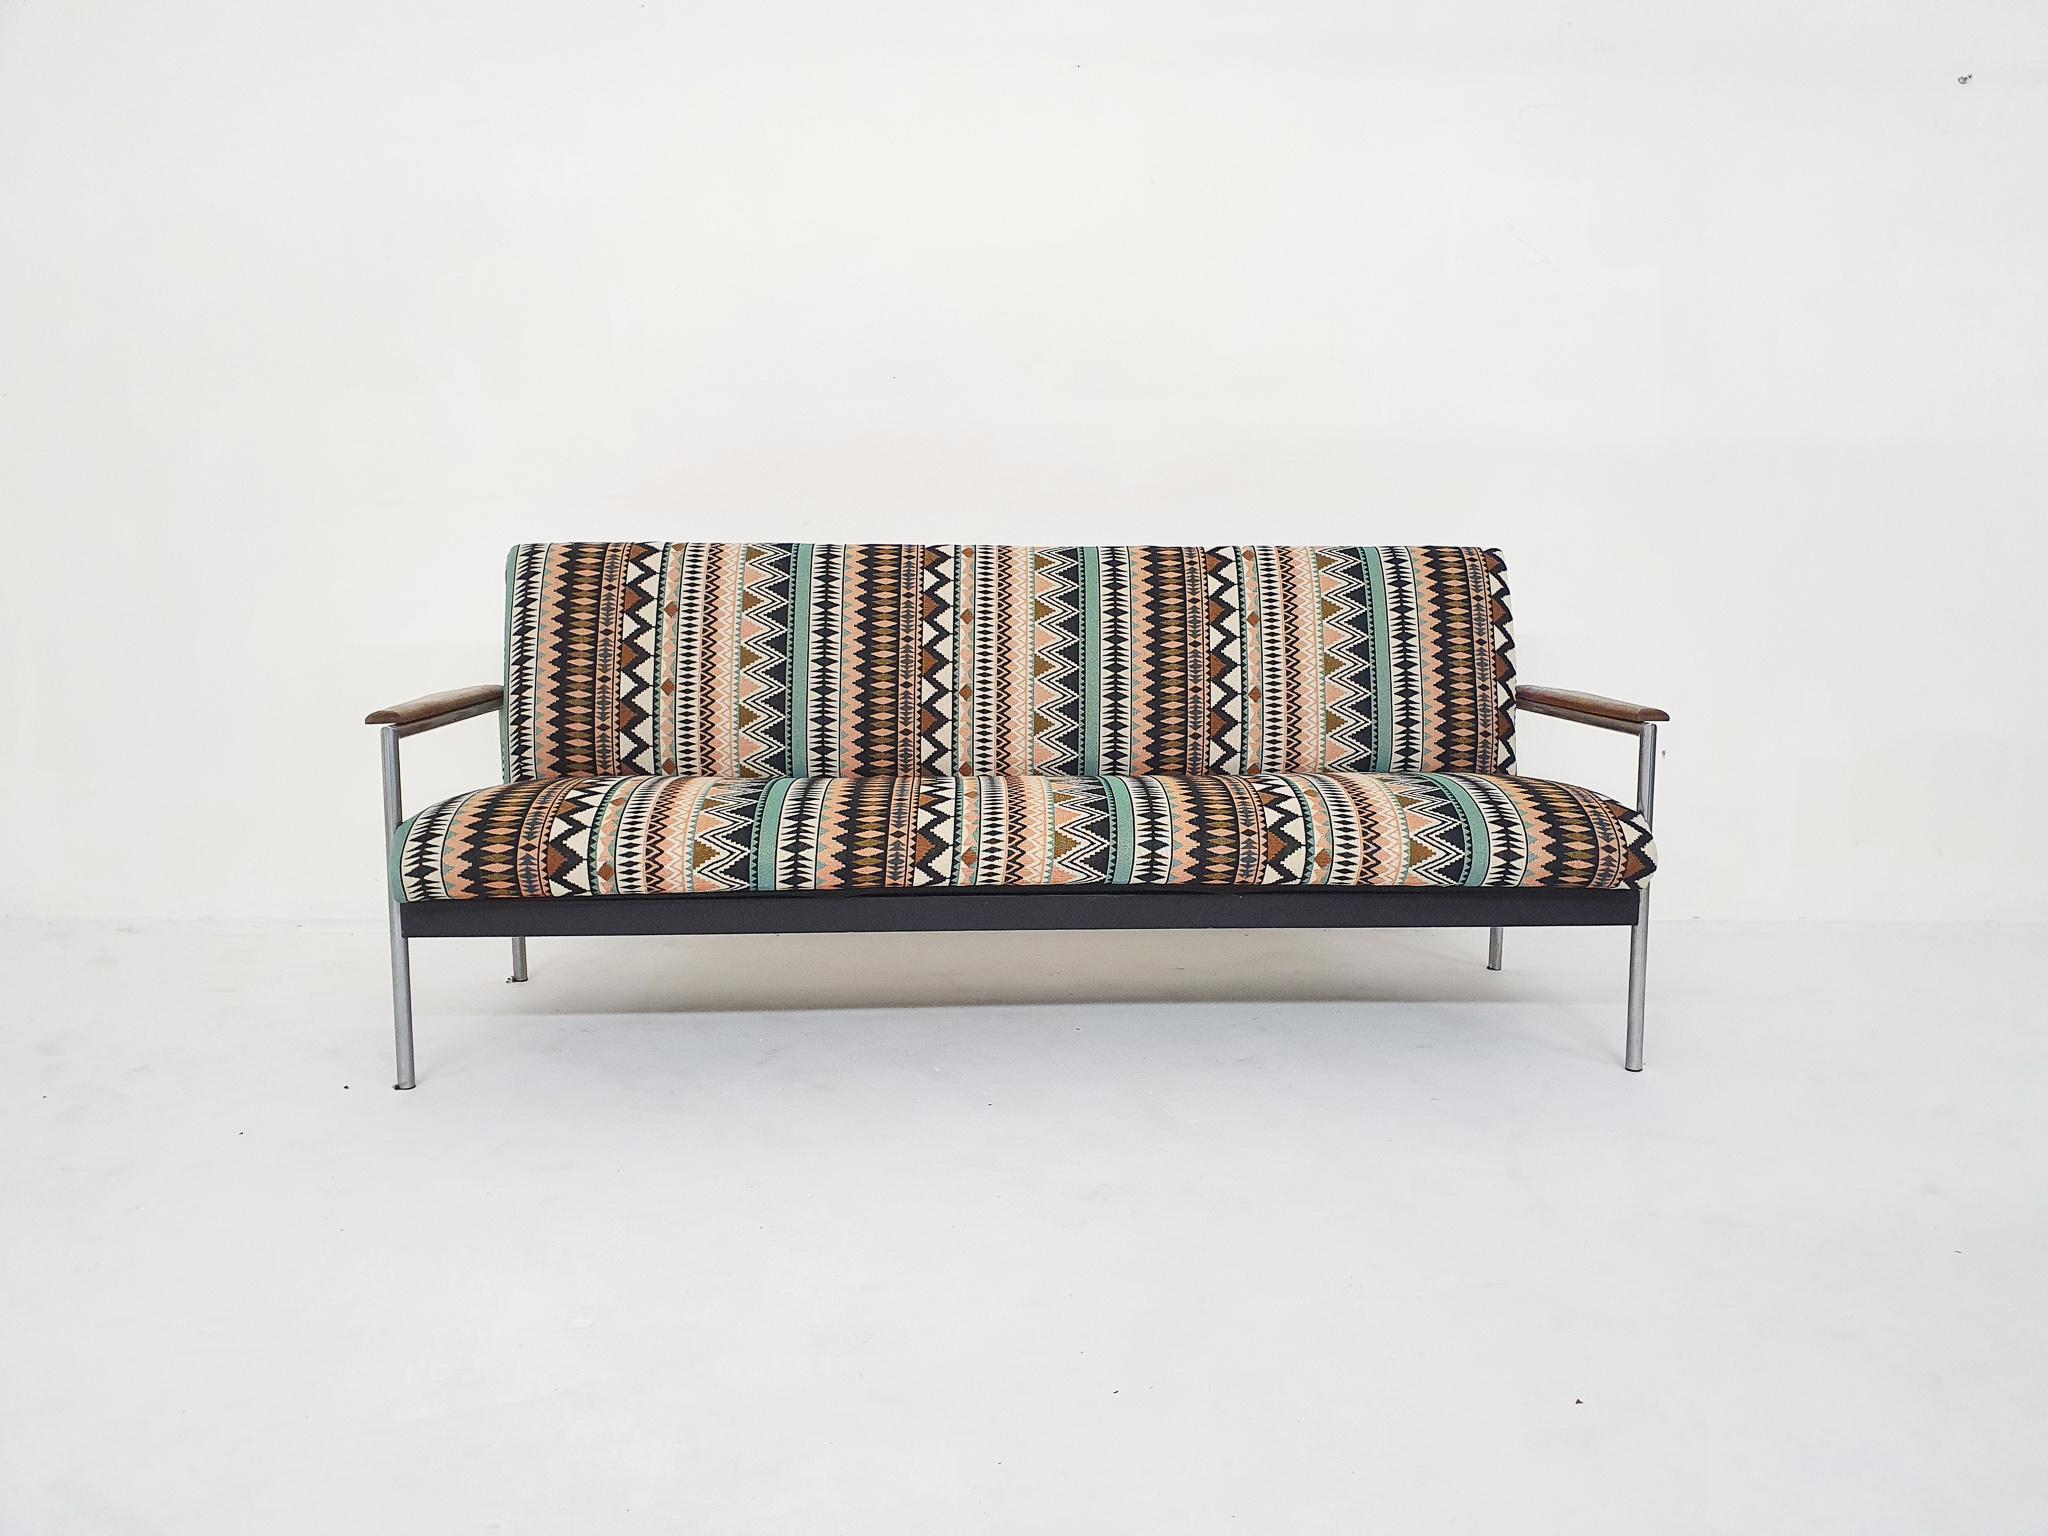 Canapé du milieu du siècle sur une structure métallique avec des accoudoirs en bois. Nous avons retapissé le canapé avec un tissu au motif funky.